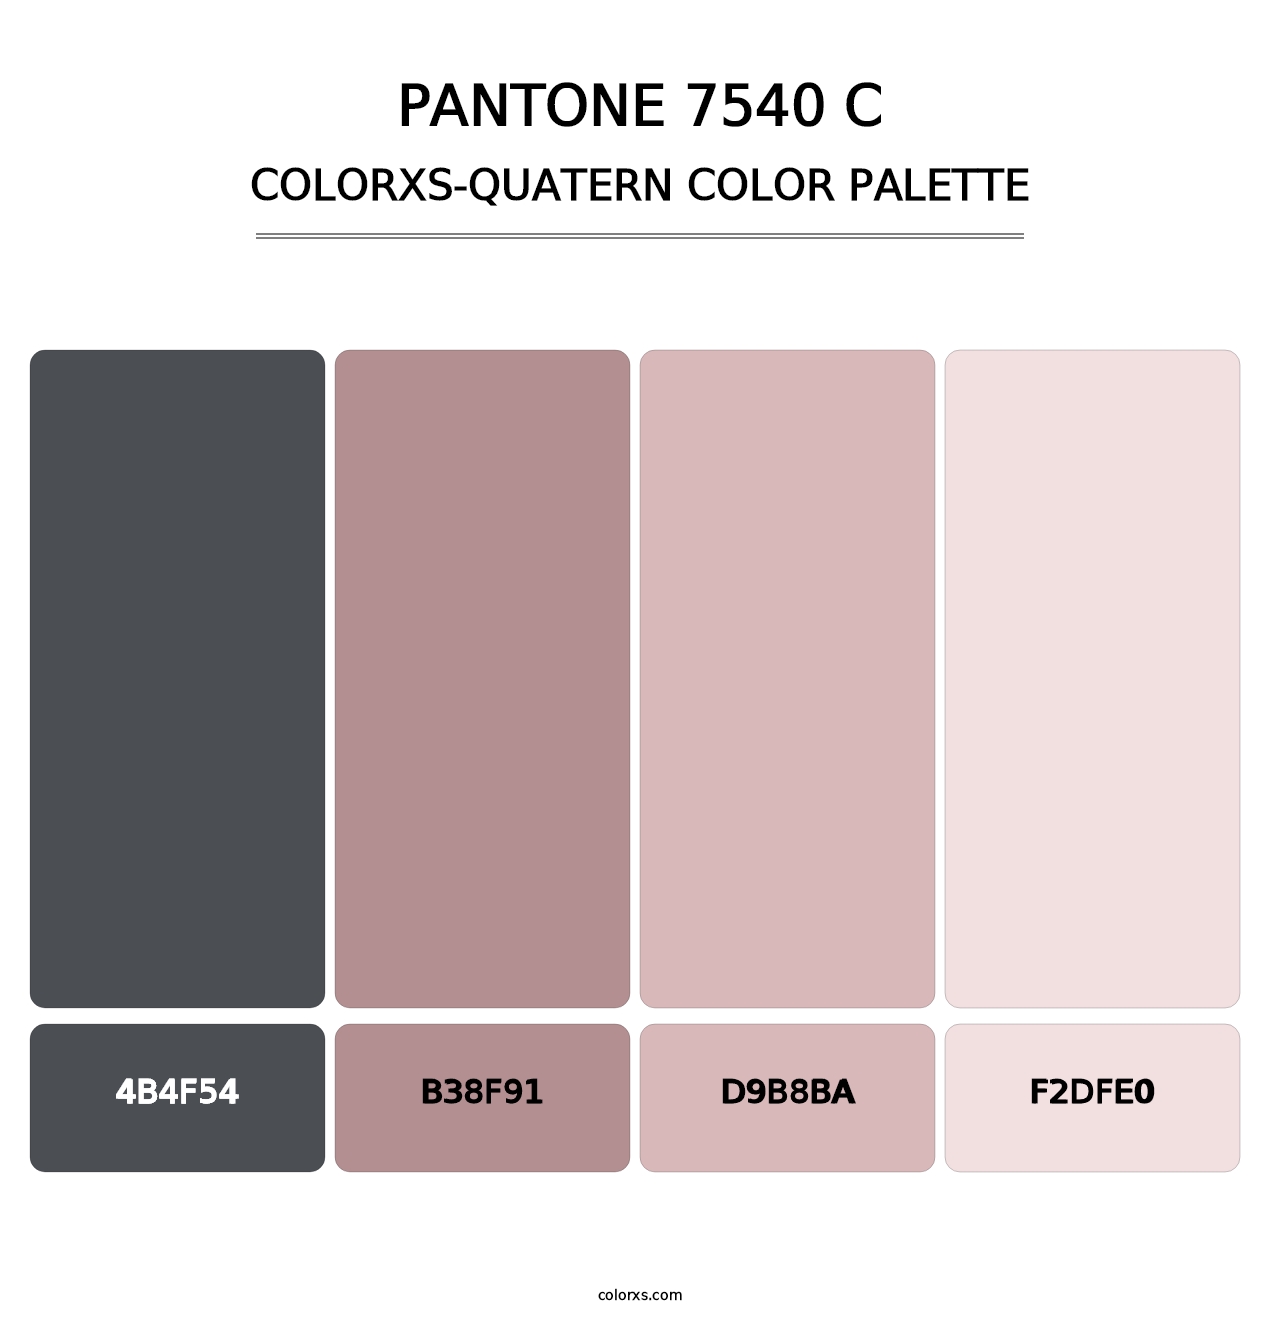 PANTONE 7540 C - Colorxs Quatern Palette